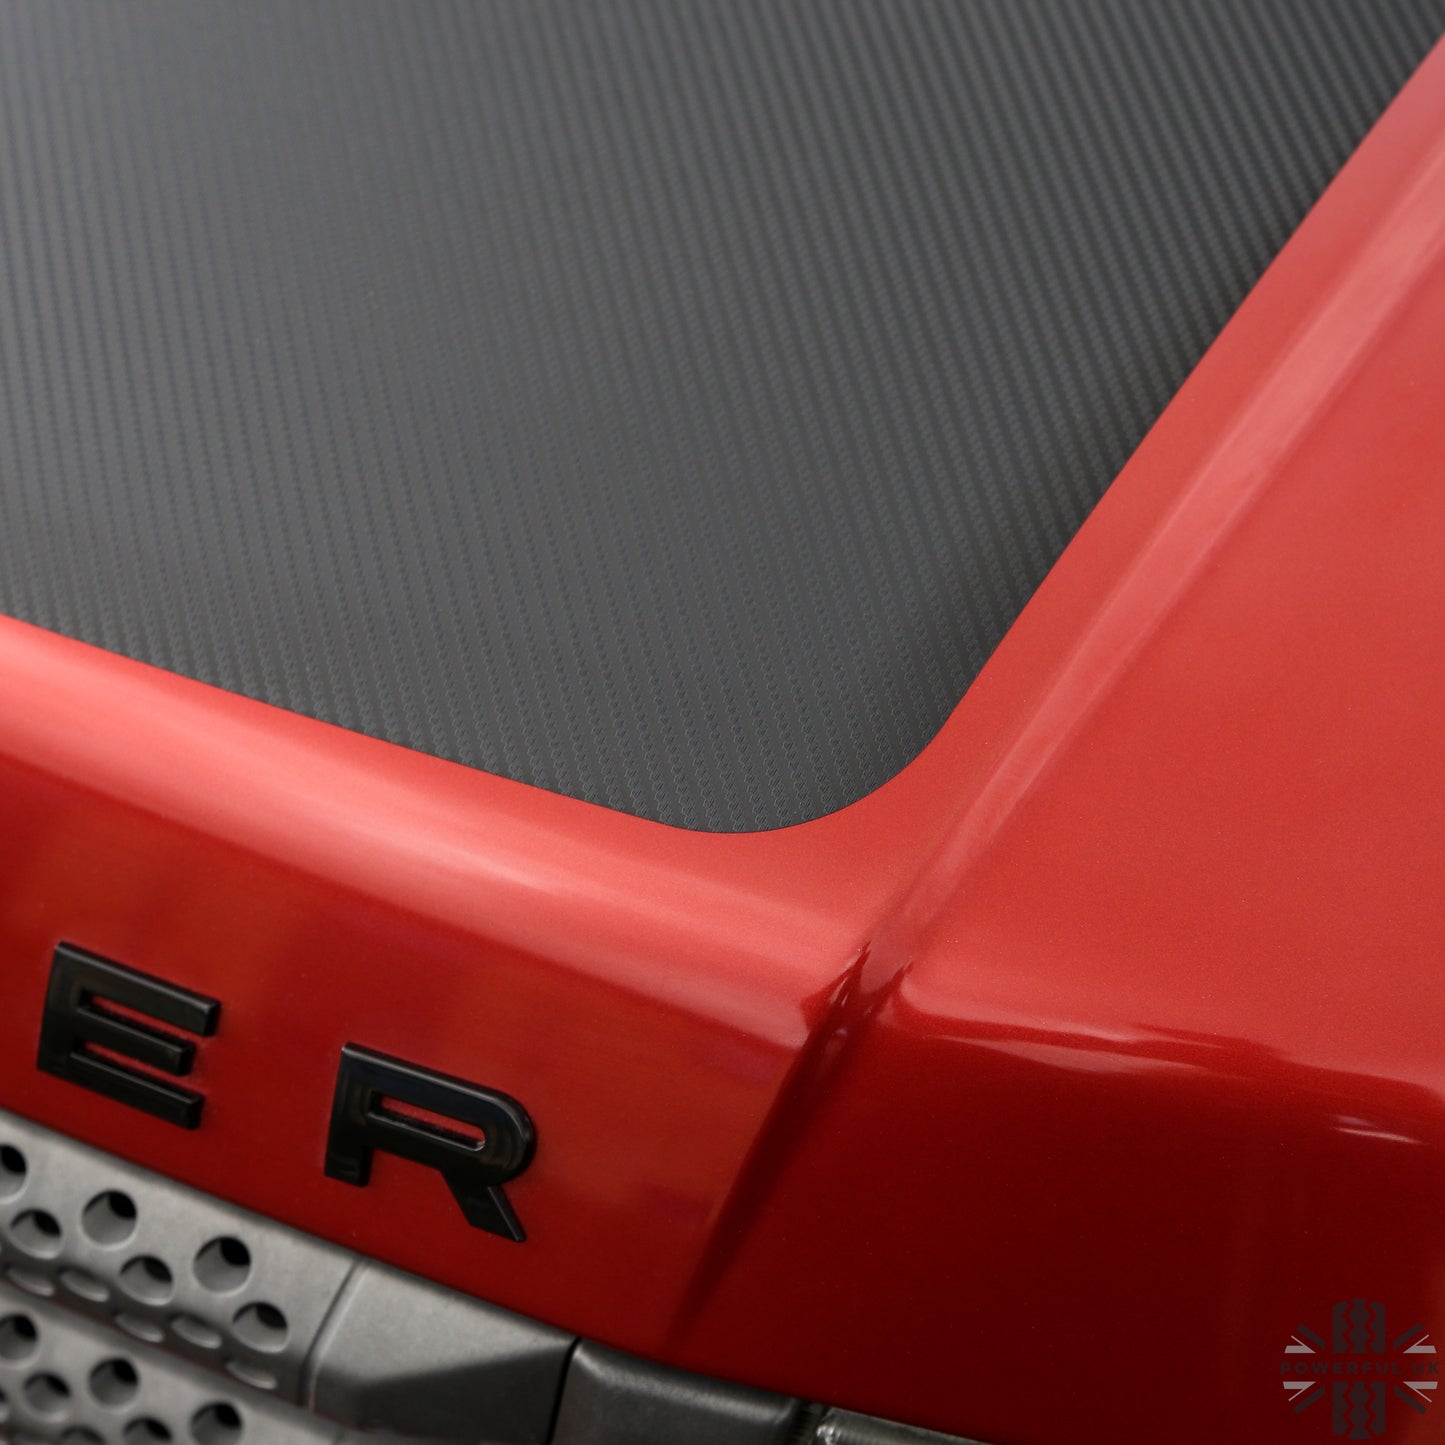 Bonnet Decal - Carbon Fibre for Range Rover Sport L320 (2005-13)